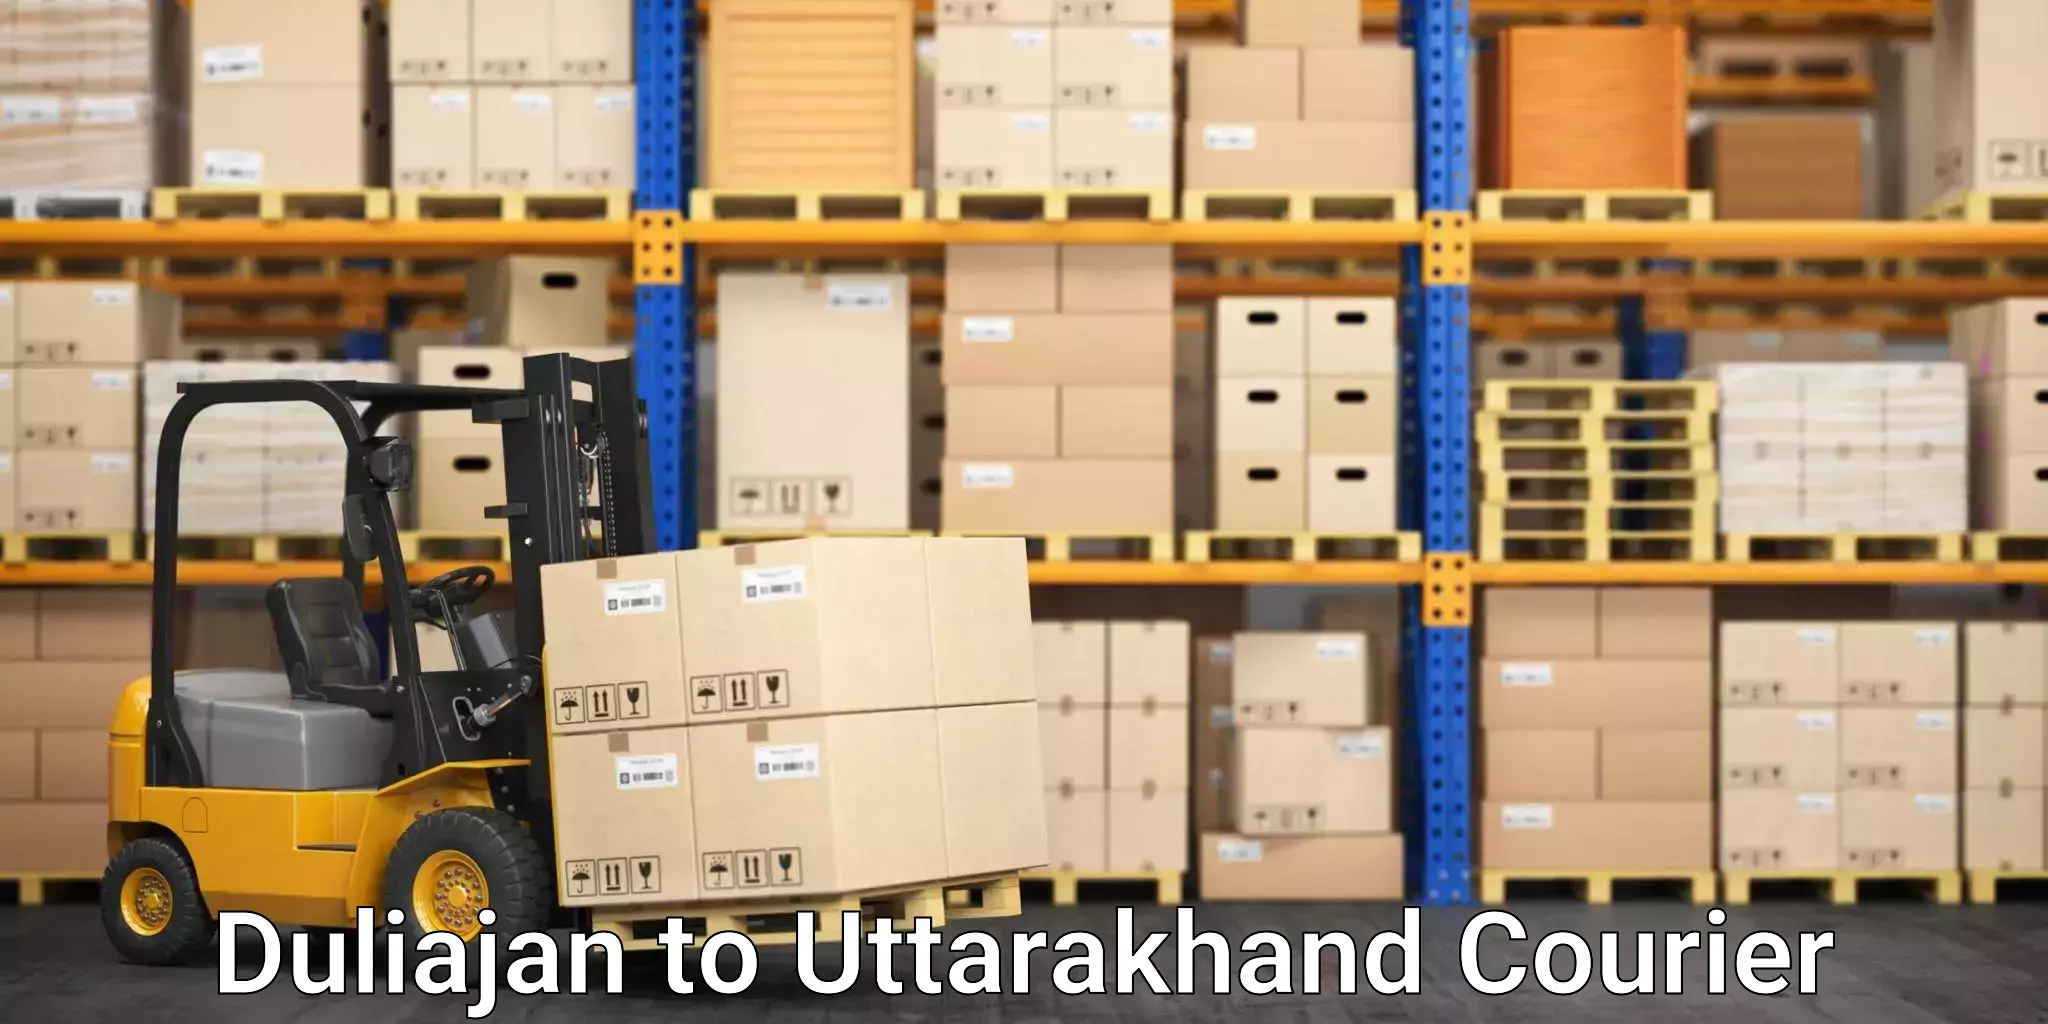 Tech-enabled shipping Duliajan to Rishikesh